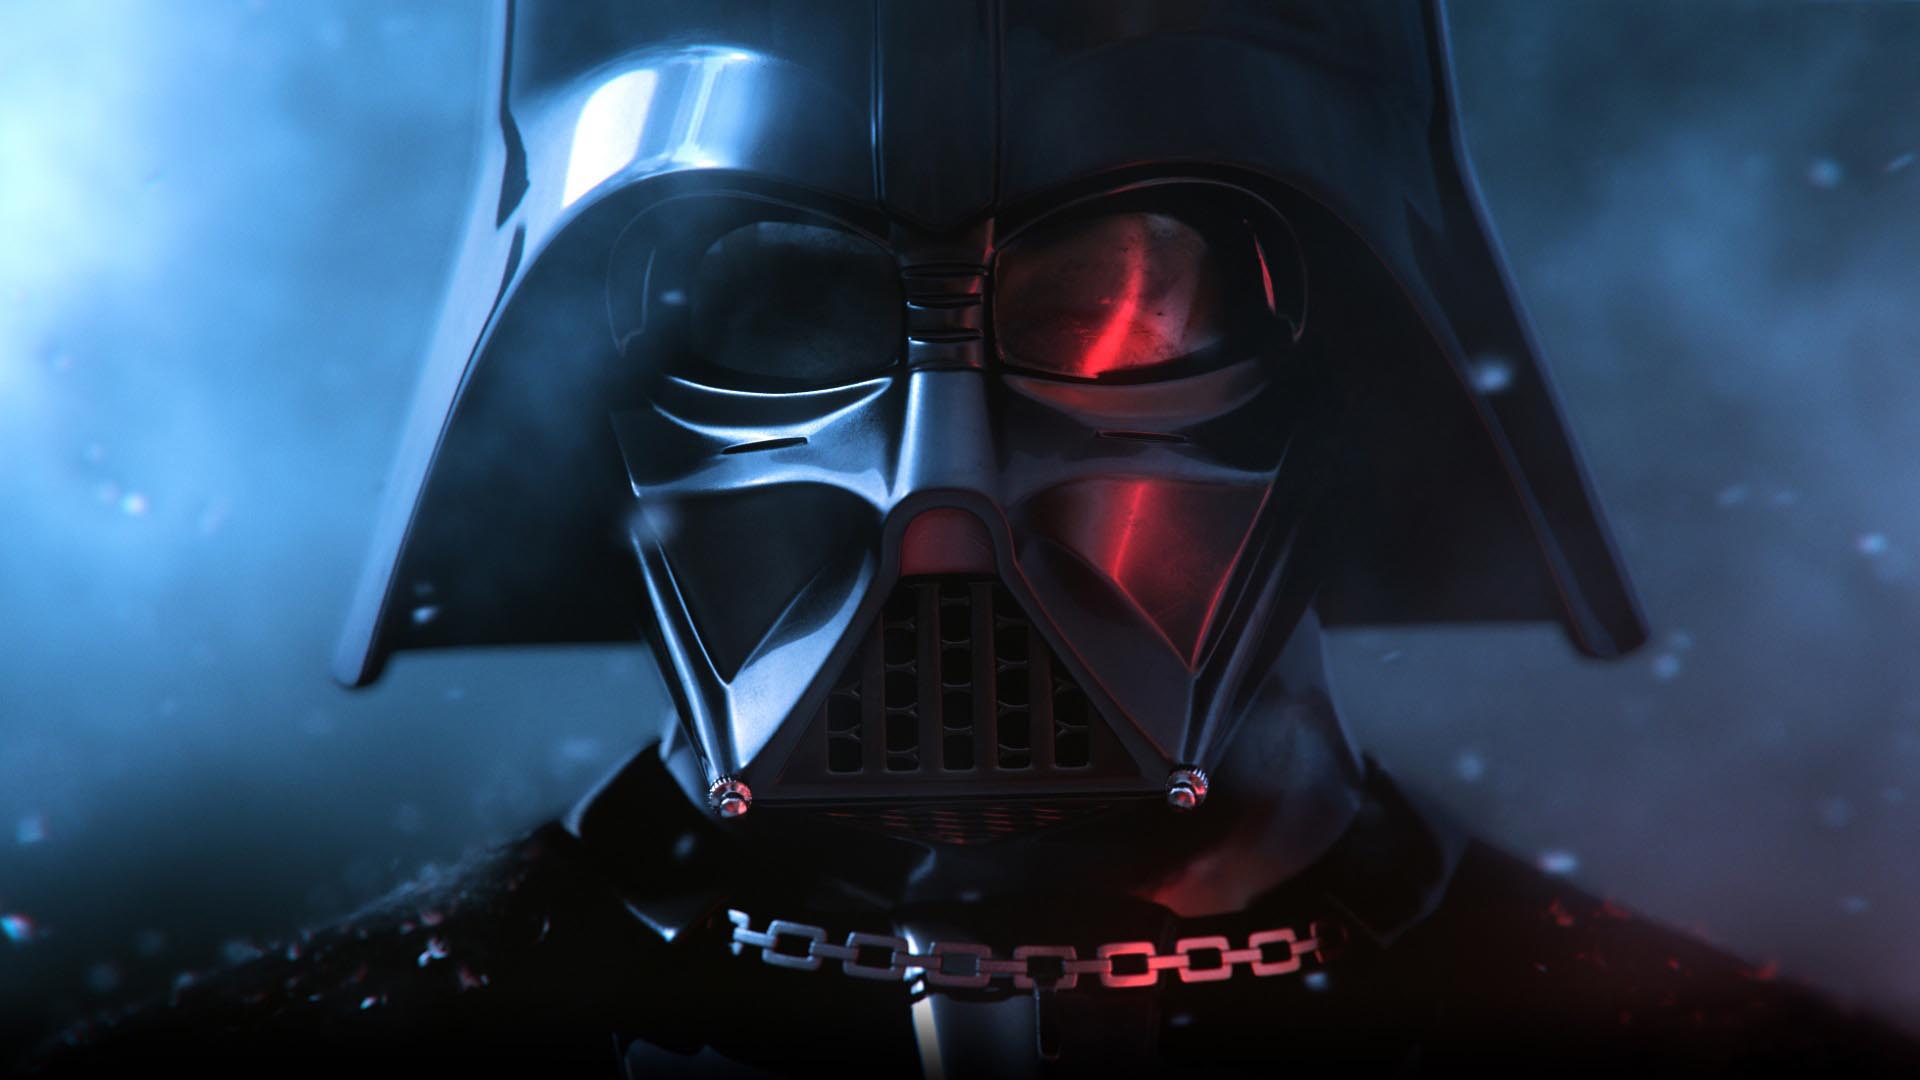 Star Wars Darth Vader HD Wallpaper FullHDwpp Full